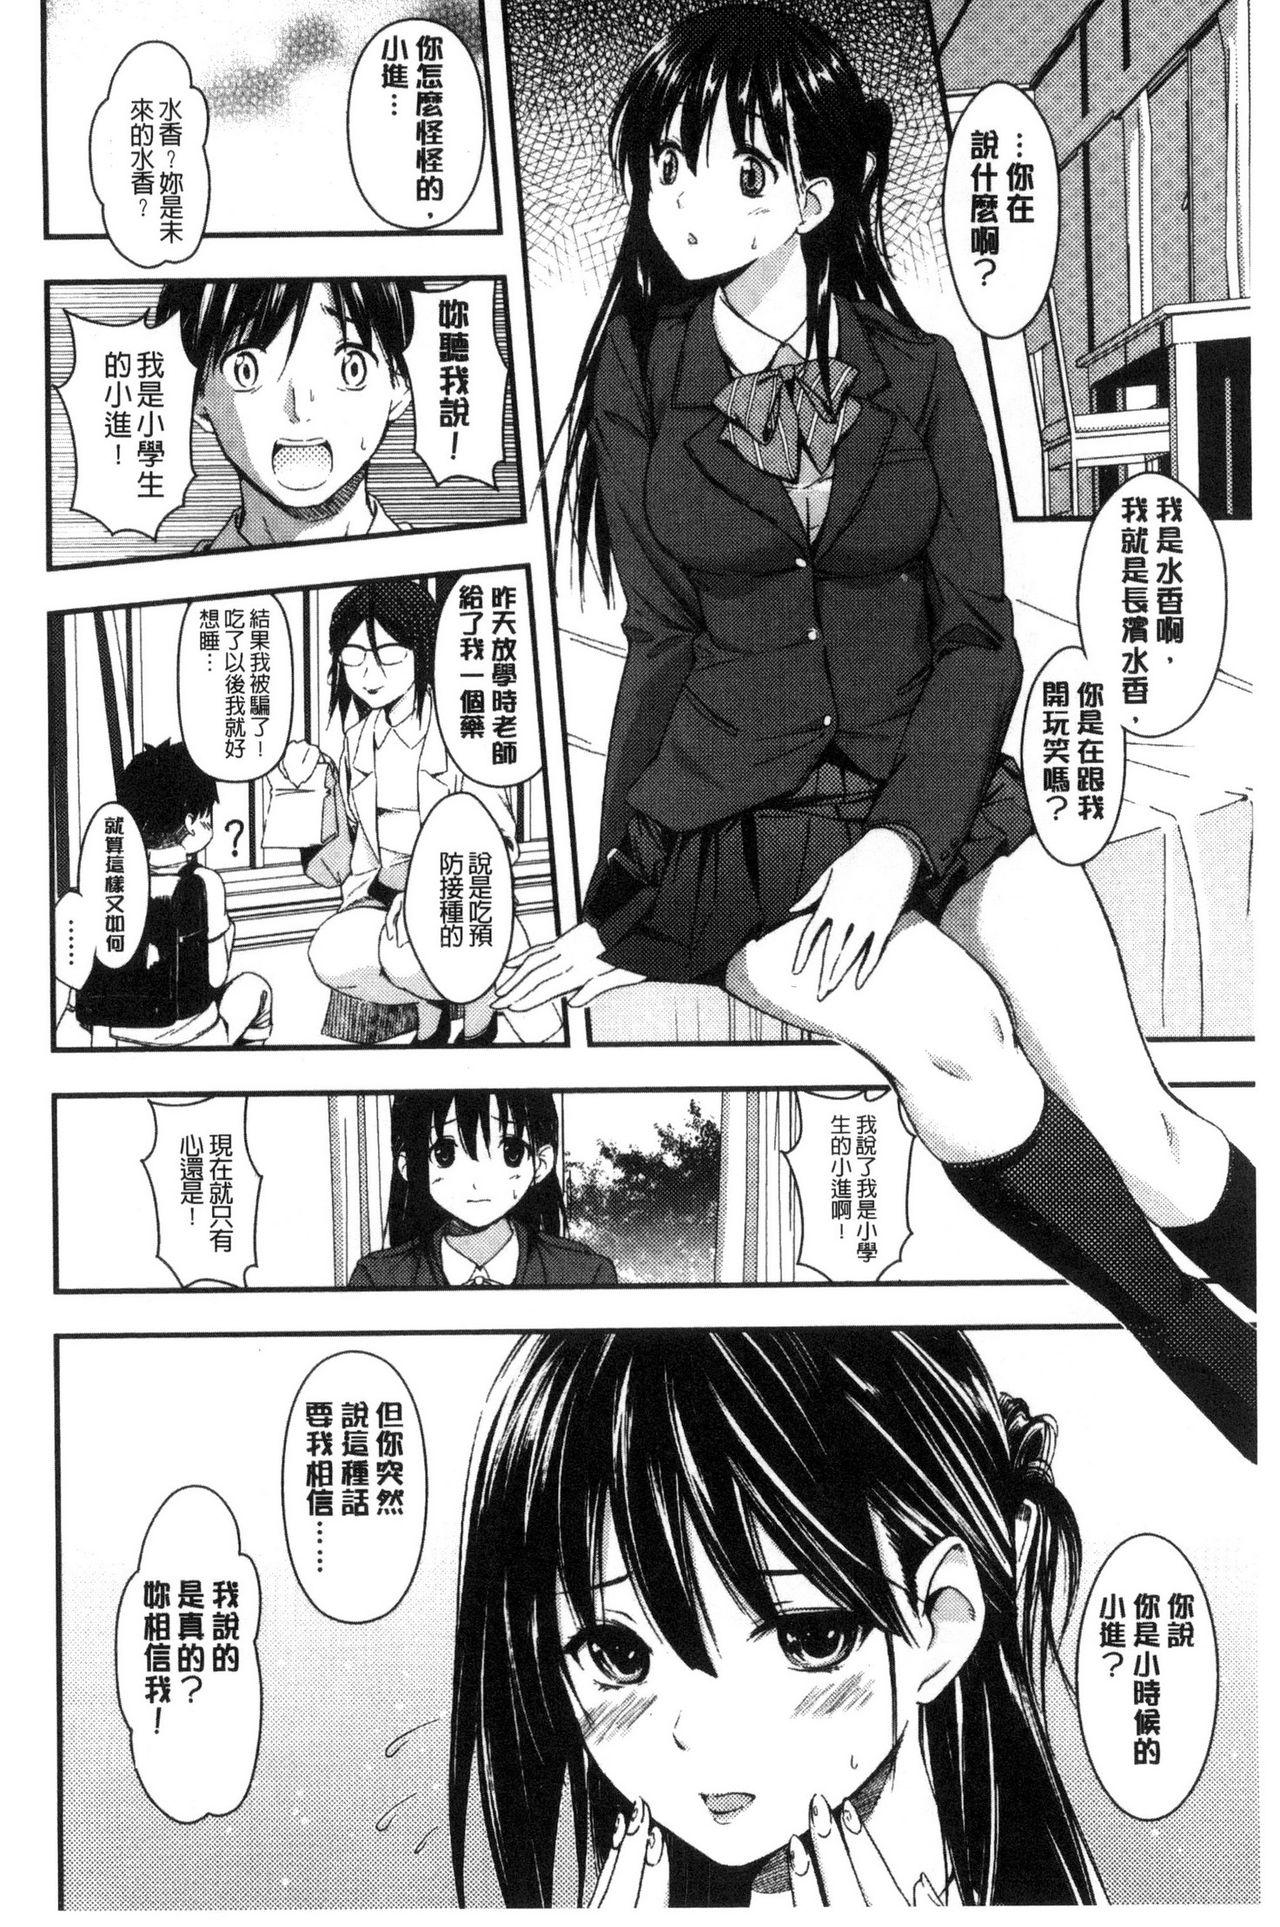 Seifuku no Mama Aishinasai! - Love in school uniform 169